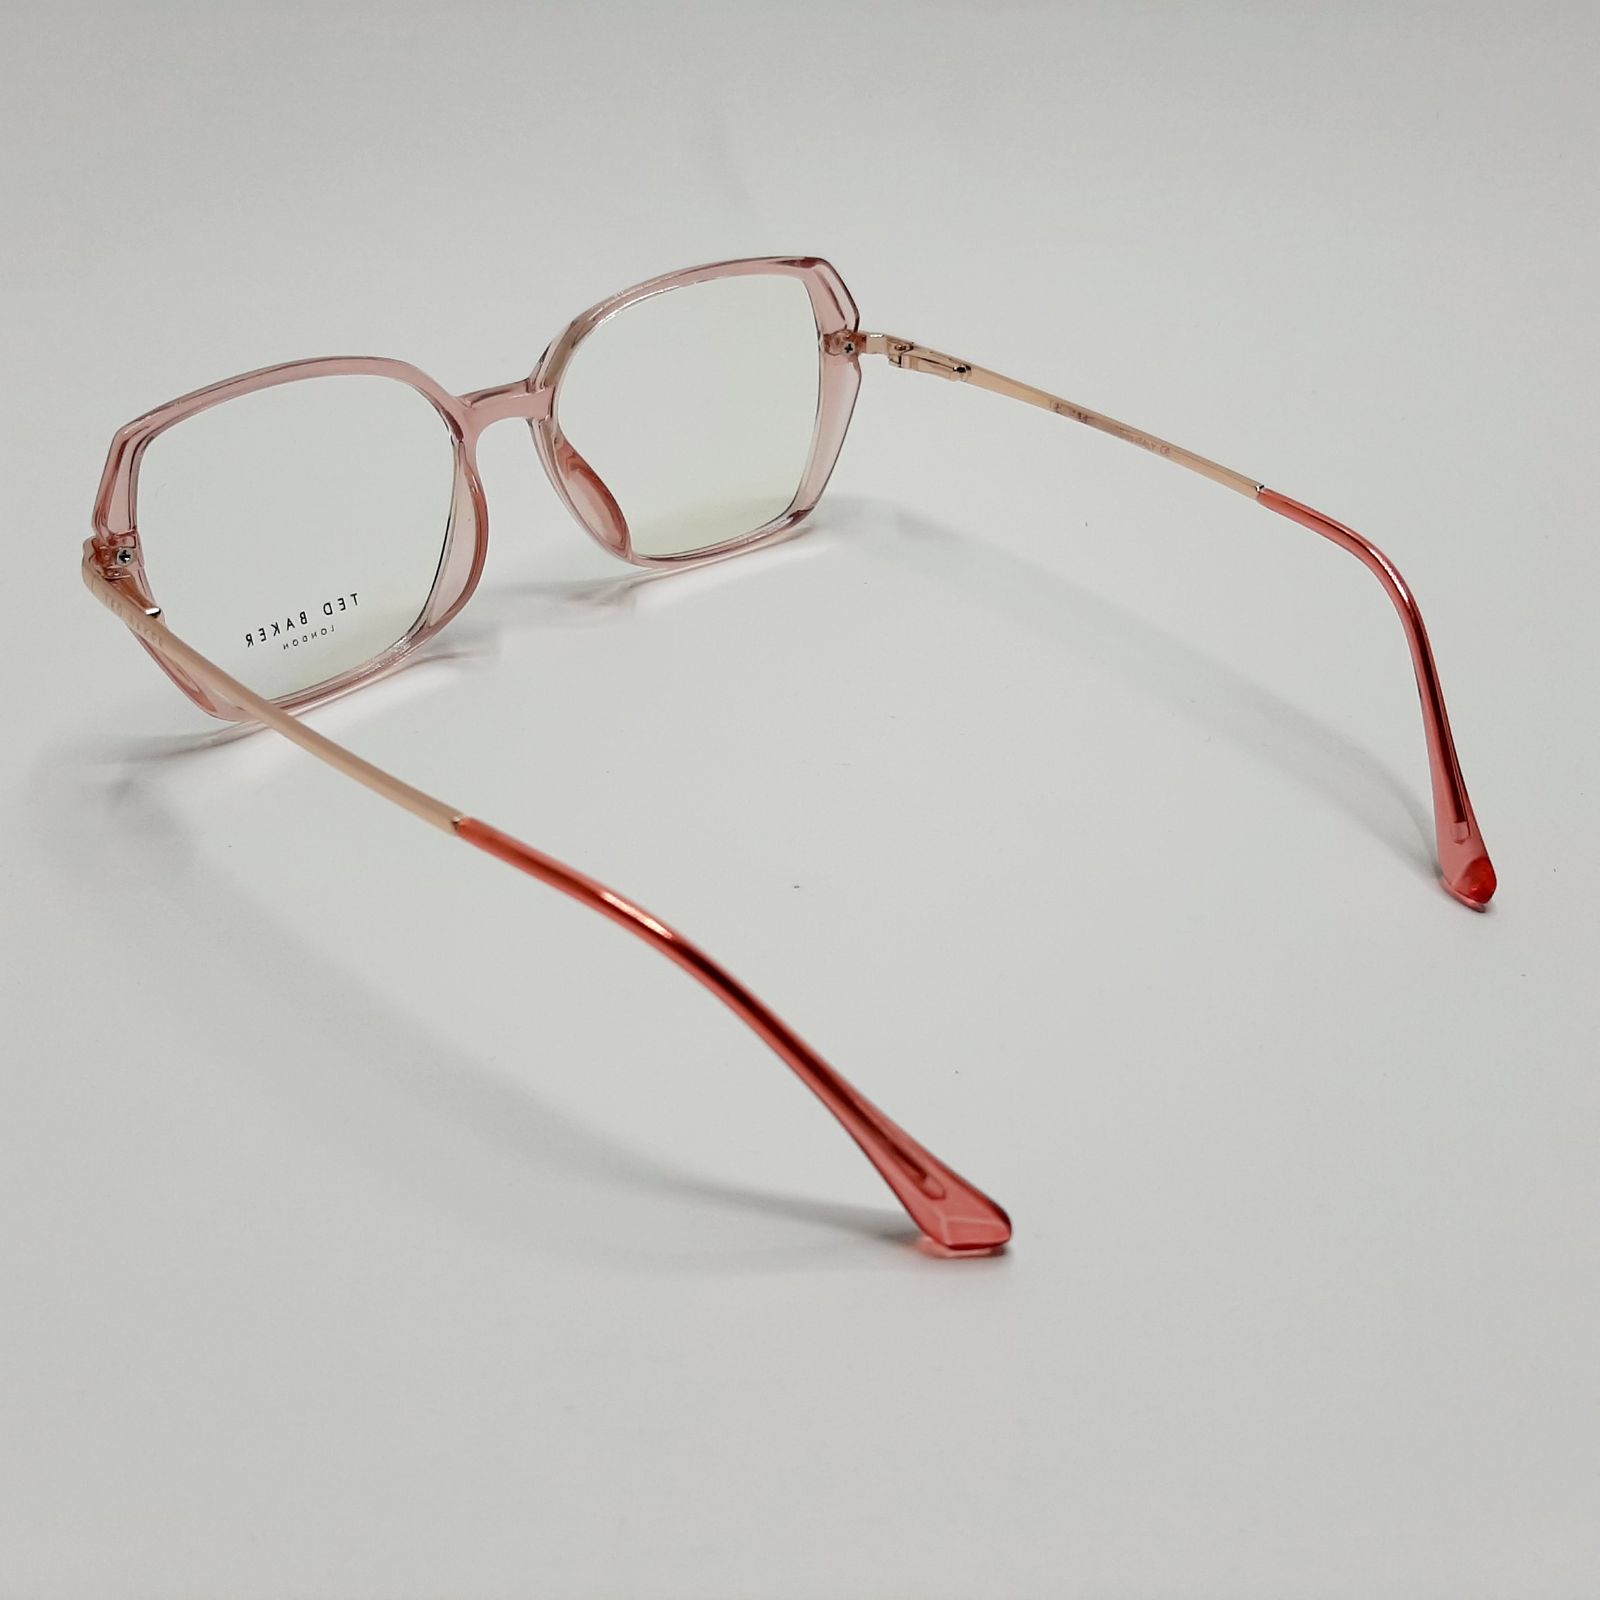 فریم عینک طبی زنانه تد بیکر مدل 95642c6 -  - 6